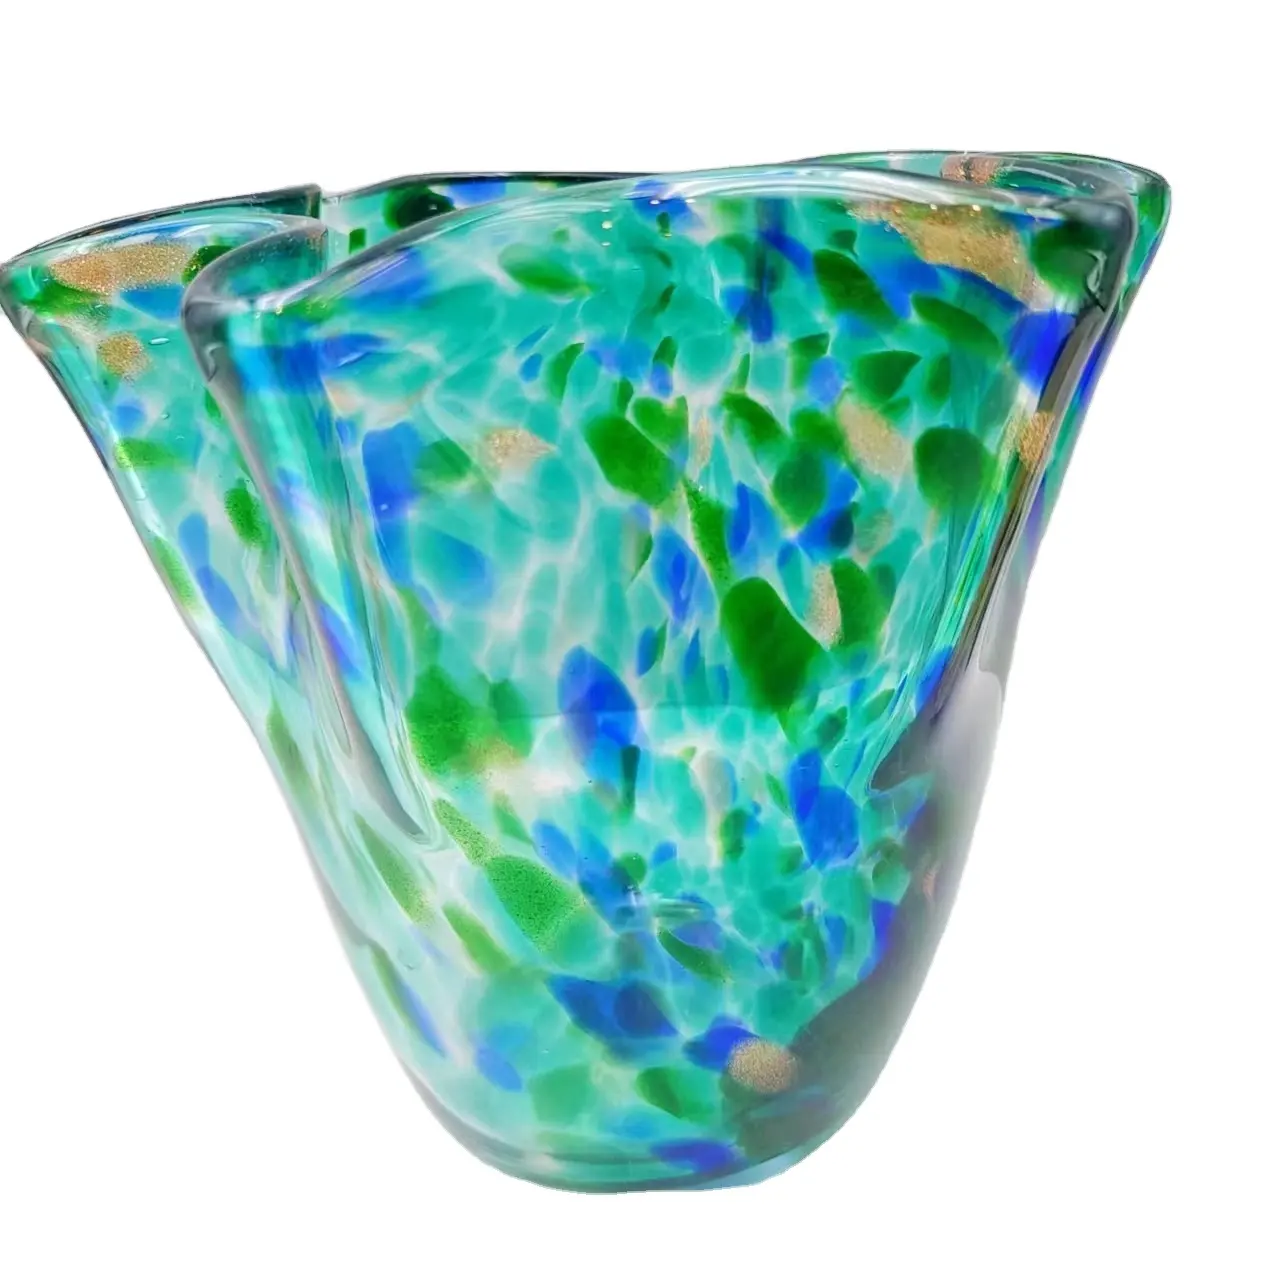 ボウルホームオフィス卓上装飾ブルーグリーンガラス花瓶デザインホリデーギフト手作りムラーノガラス高速配送新しいヨーロッパMJ